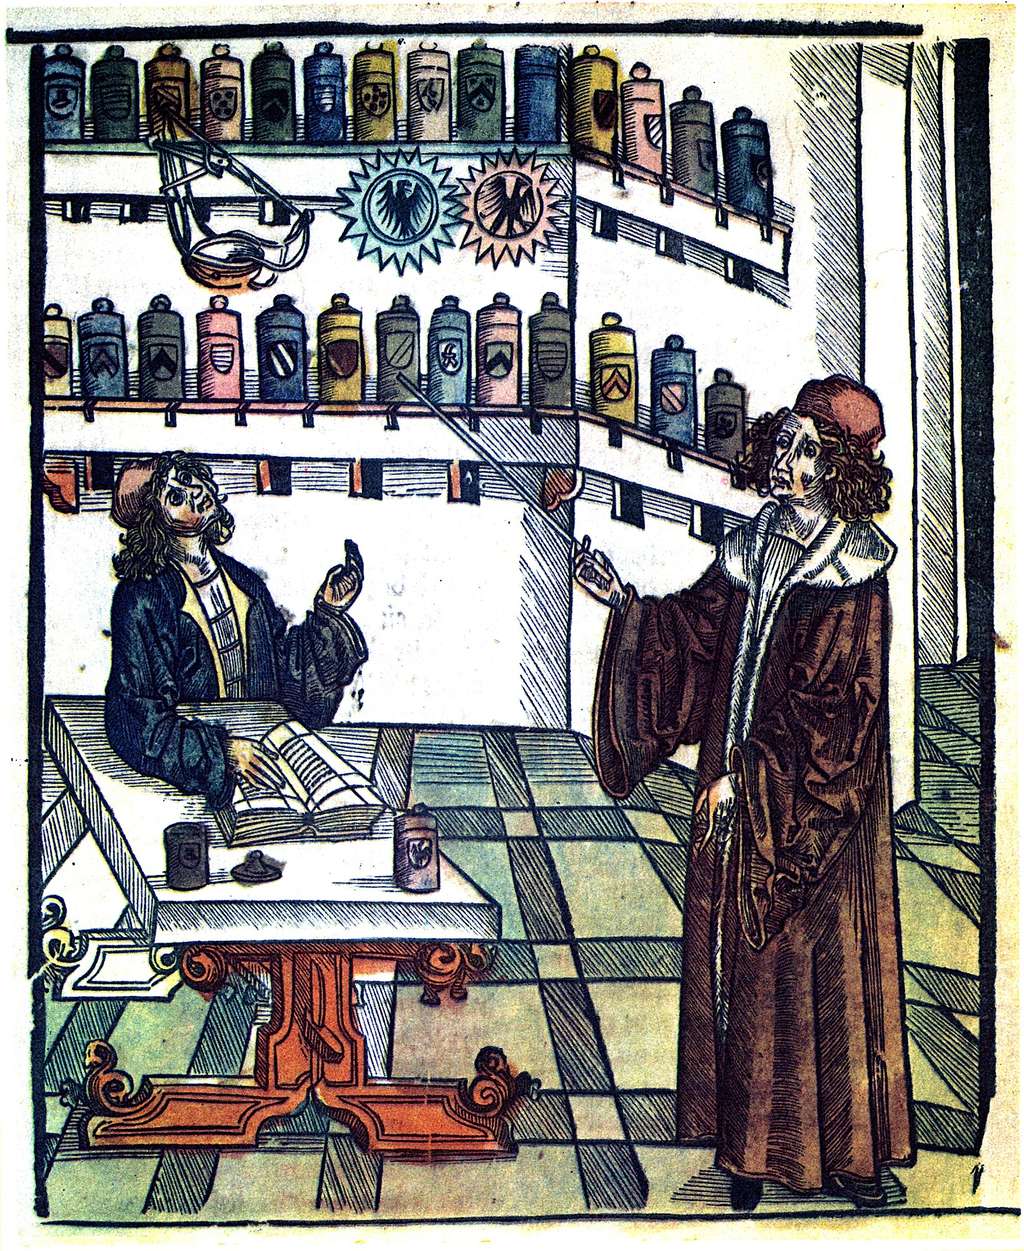 Représentation d'un maître apothicaire donnant la leçon à son apprenti, extrait de <em>Das Buch der Gesundheit</em> (le livre de la santé) par Hieronymus Brunschwig, édité à Strasbourg vers 1505. © <em>Wikimedia Commons</em>, domaine public